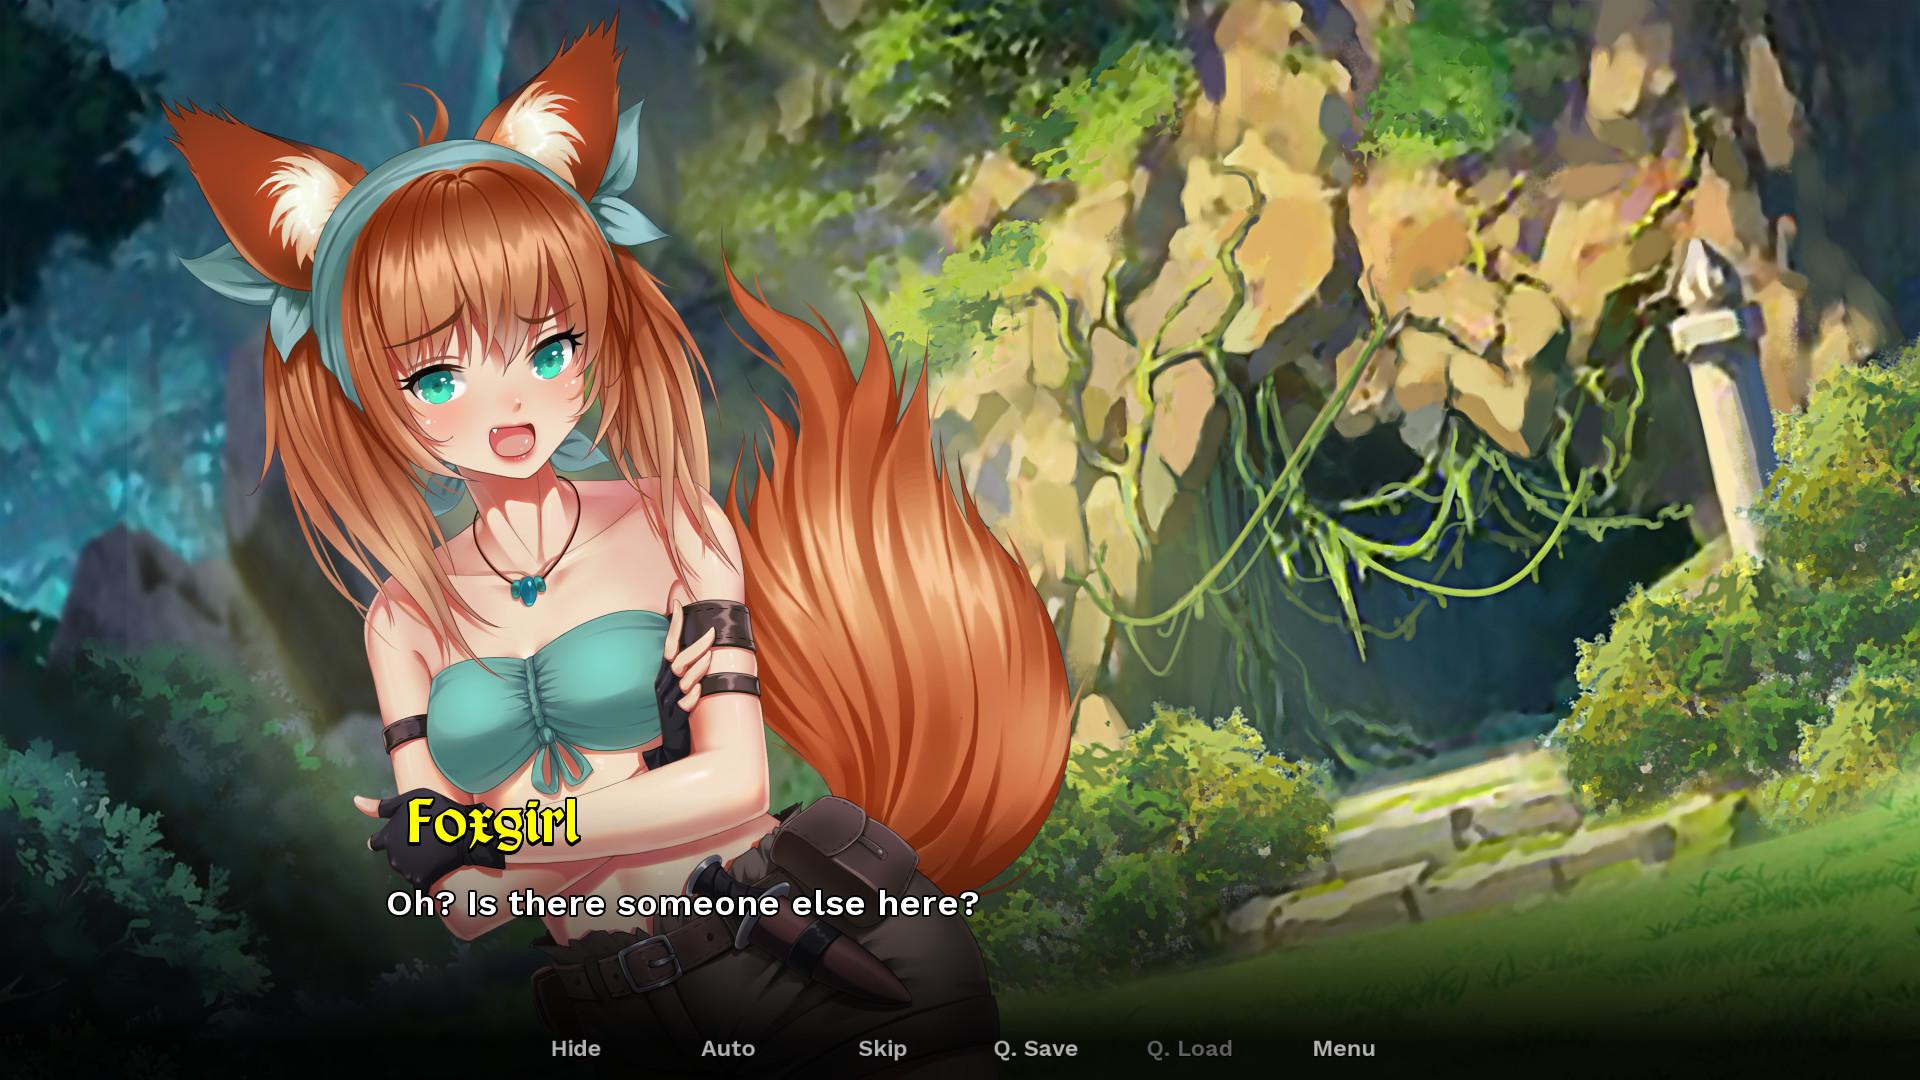 Screenshot №6 from game Steamy Sextet